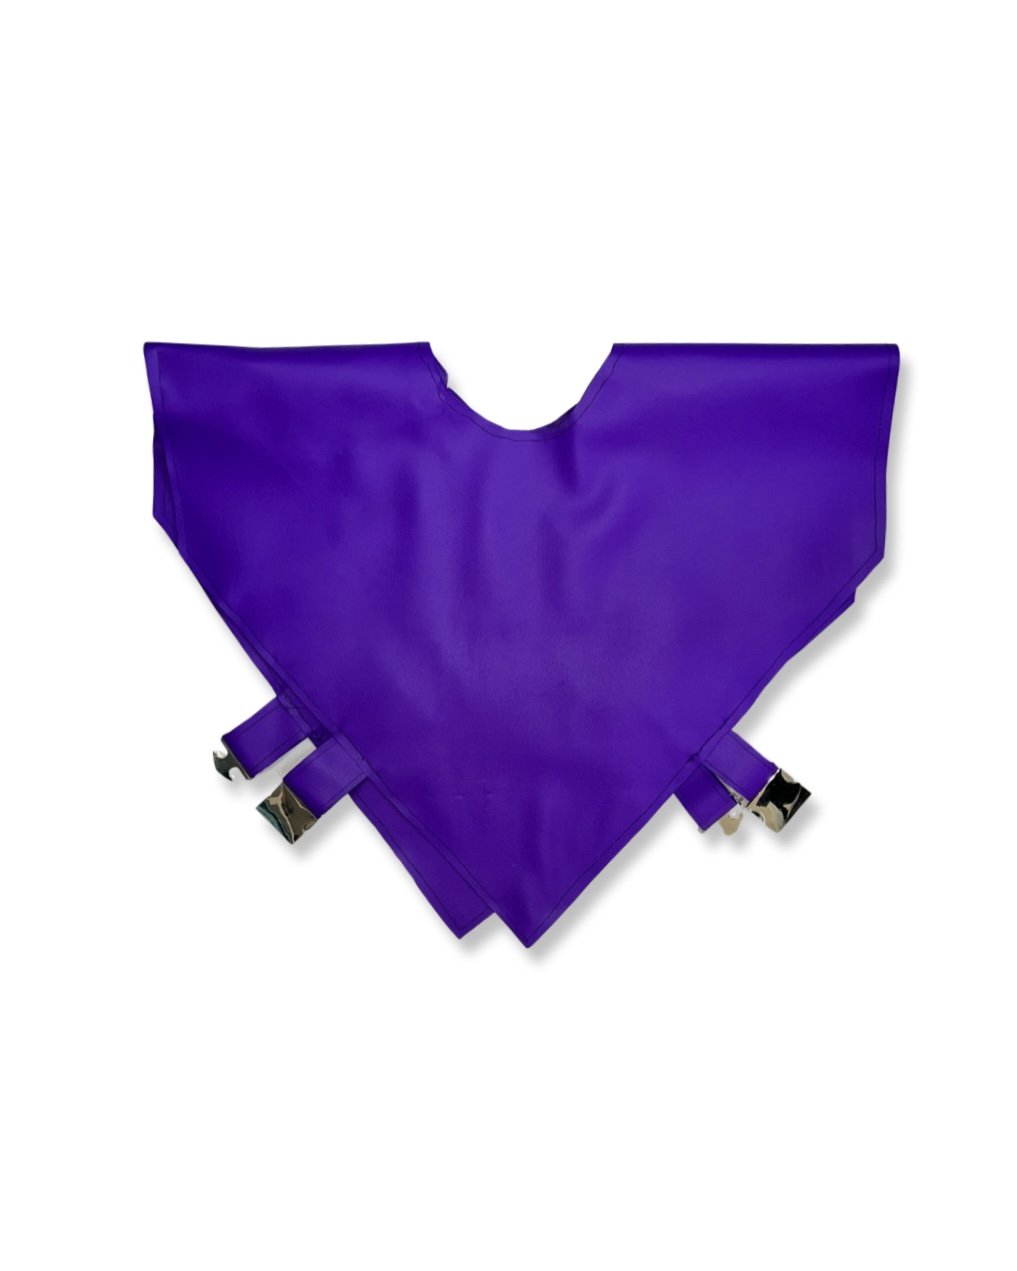 Uniform Double Triangle Top in Bright Purple